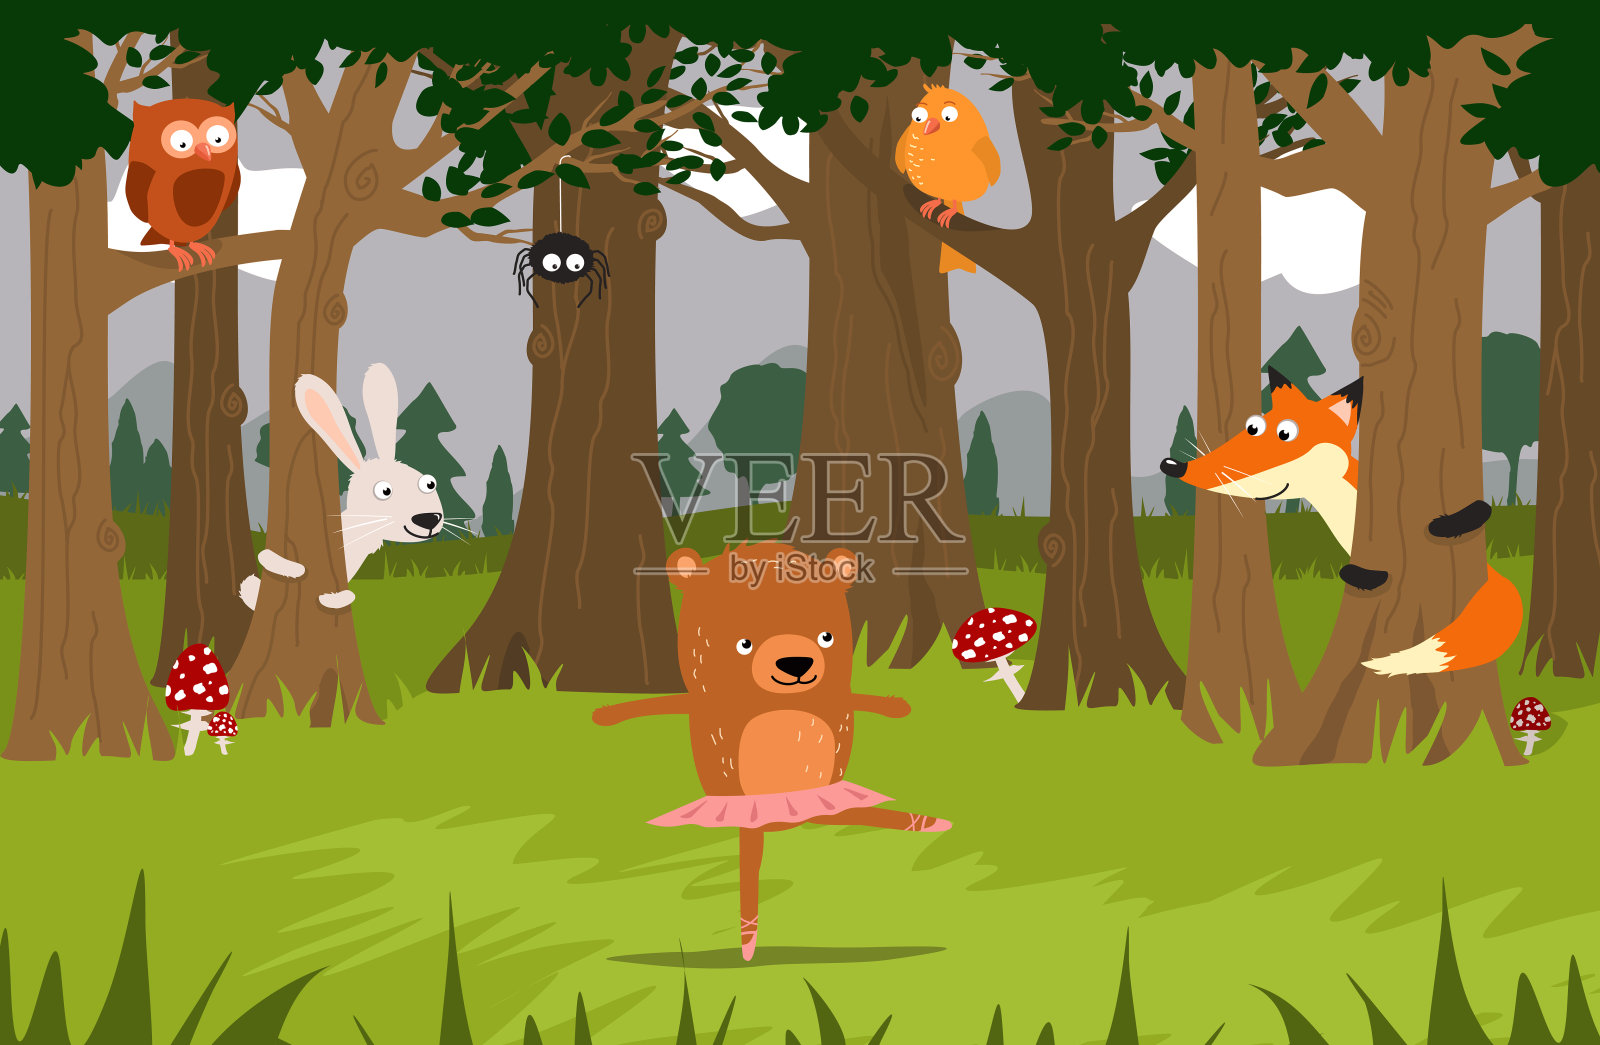 芭蕾舞熊和她的朋友们:狐狸、兔子、小鸟、蜘蛛，看着她在森林里跳舞。插画图片素材